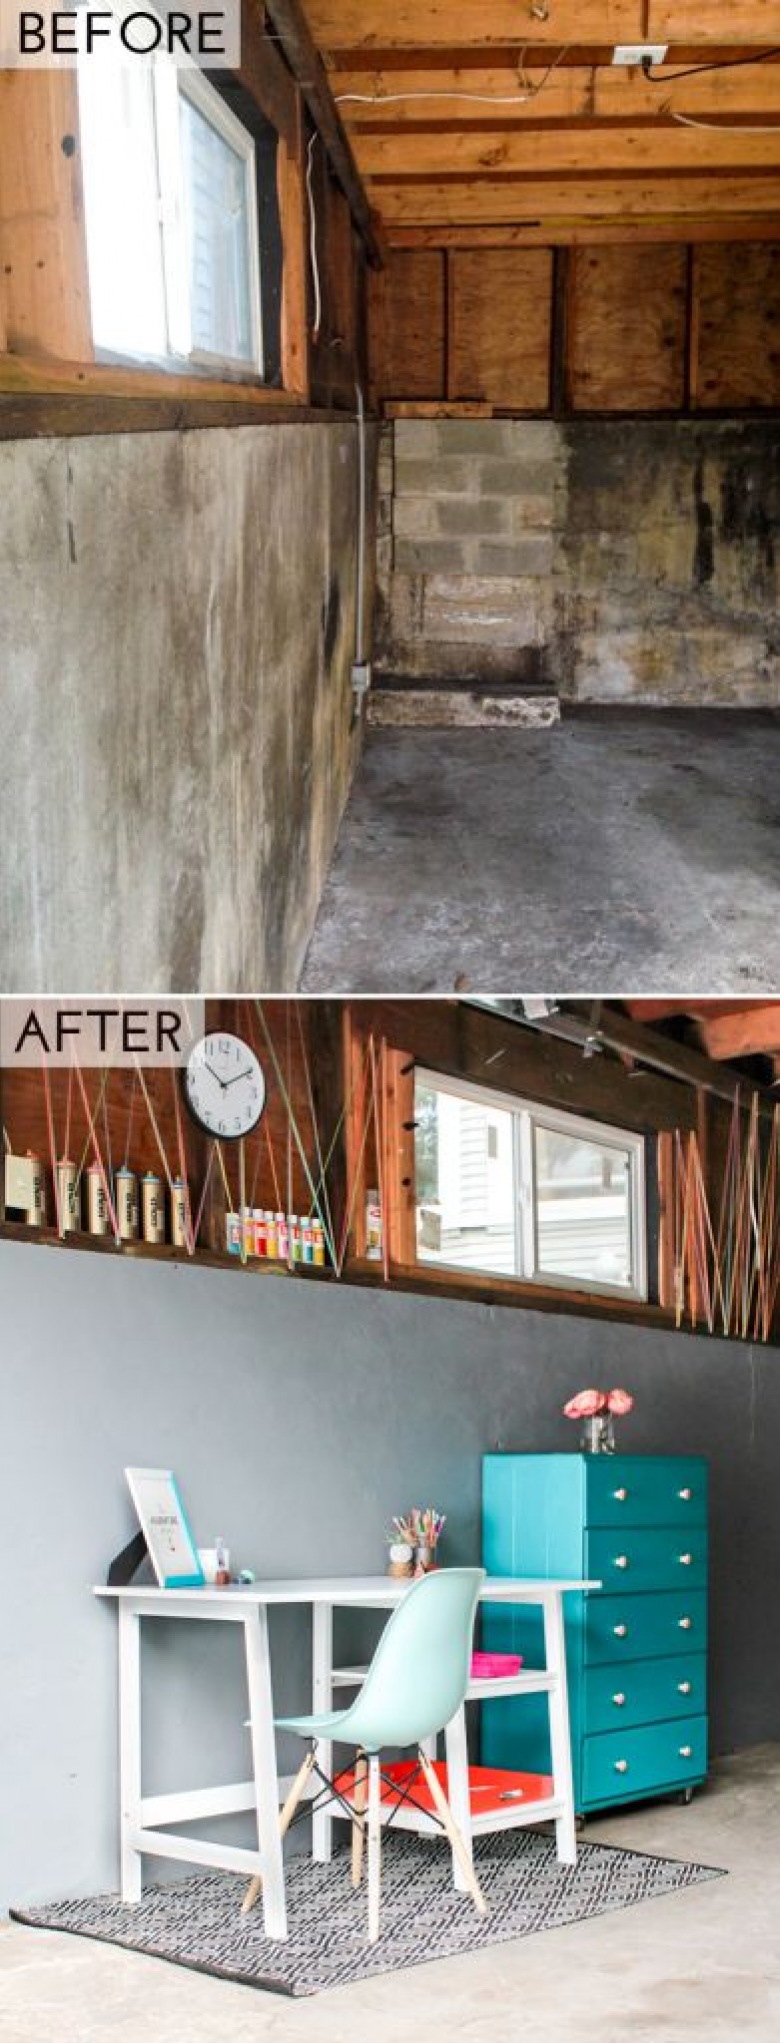 Garaż before & after, czyli jak maksymalnie inspirująco wykorzystać potencjał pomieszczenia gospodarczego! ()